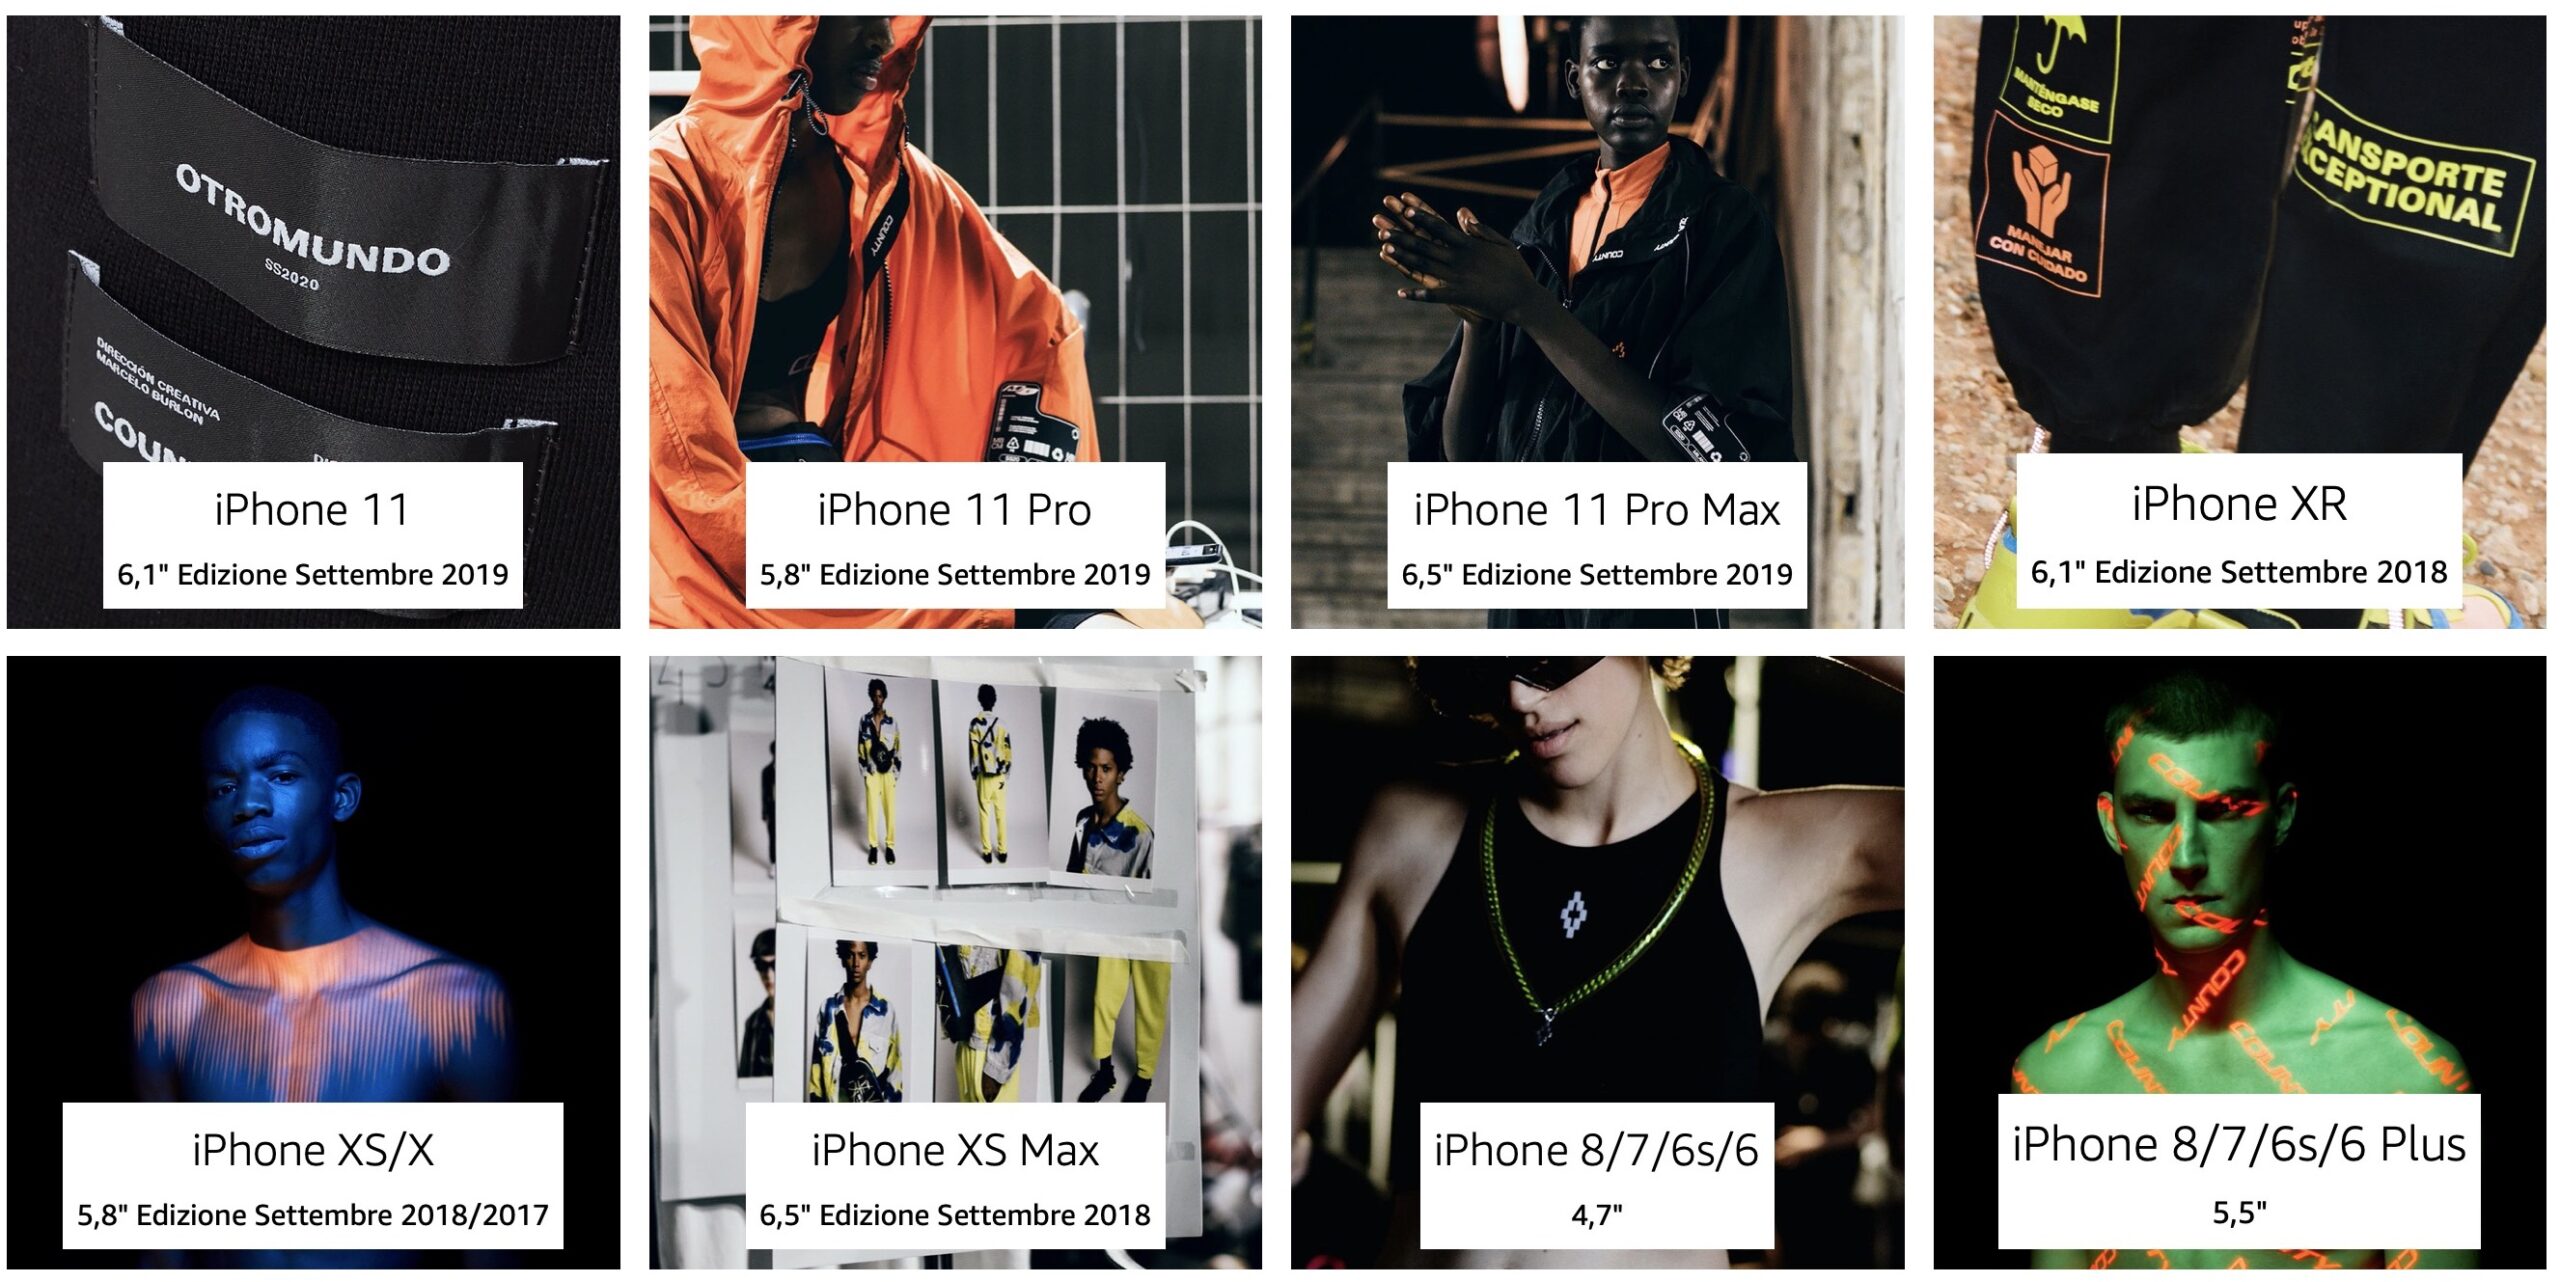 Tutte le cover iPhone di Marcello Burlon in super sconto 40% su Amazon